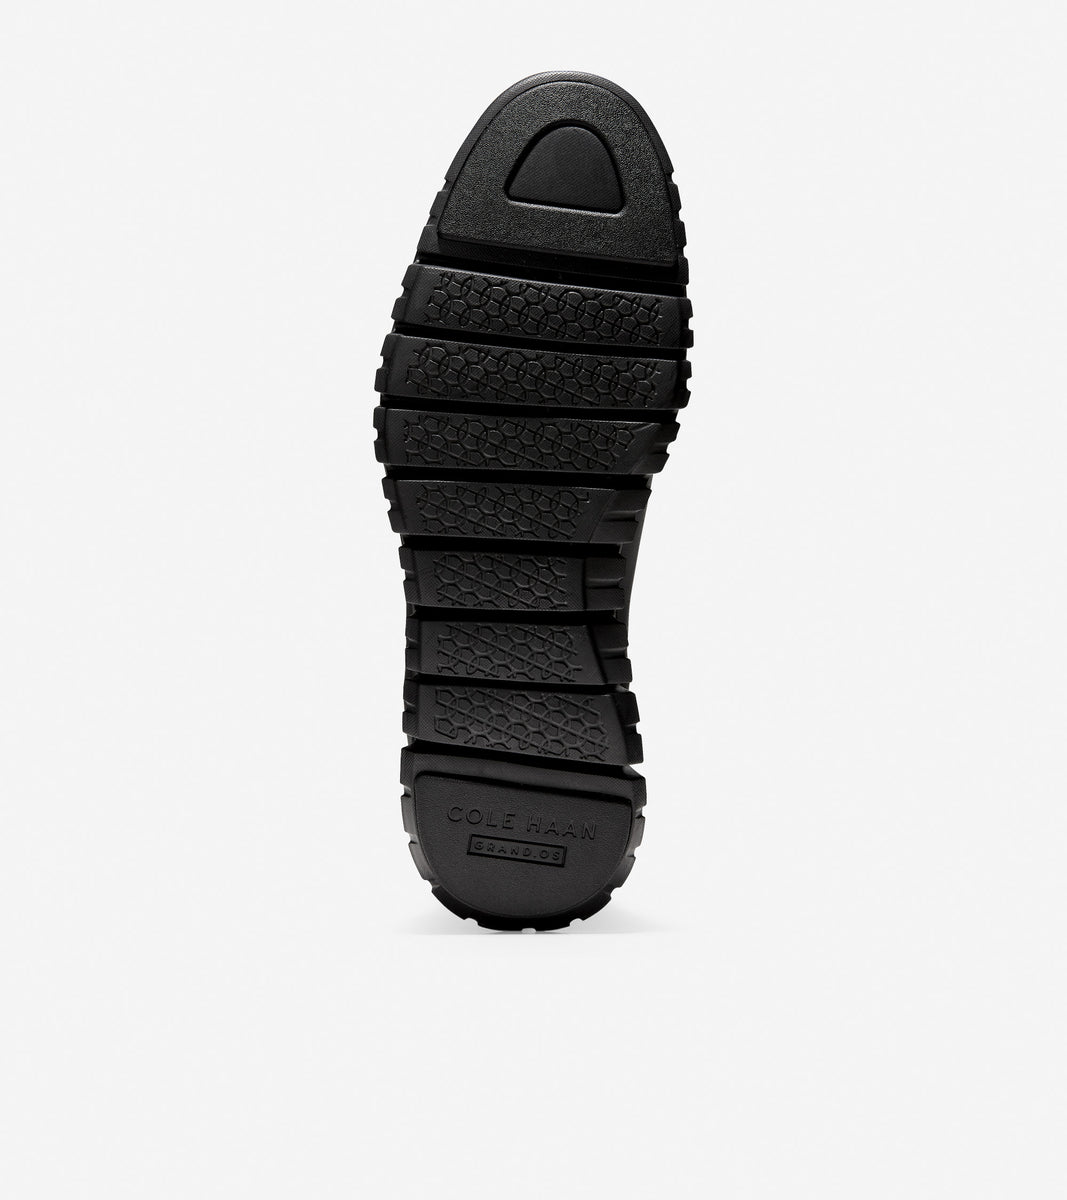 ColeHaan-ZERØGRAND Chelsea Boot-c30163-Black Leather